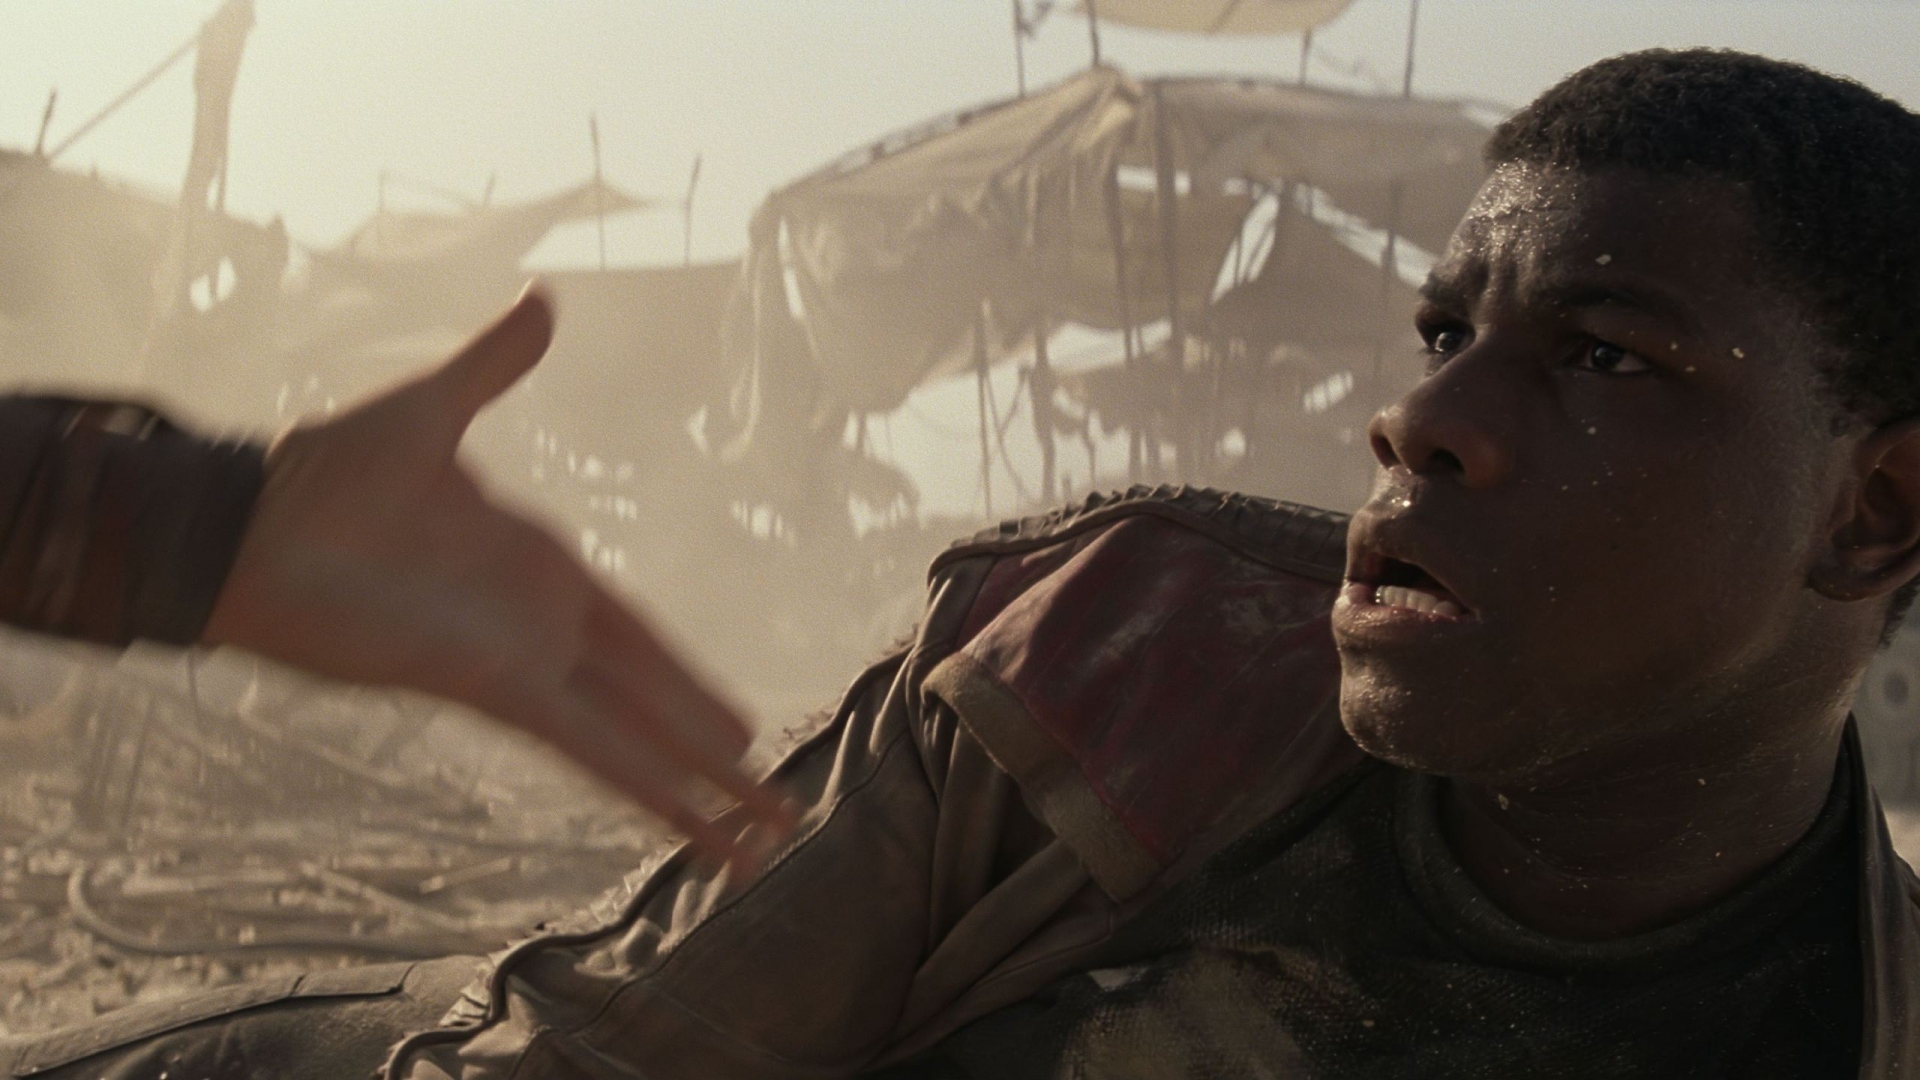 Star Wars The Force Awakens John Boyega for 1920 x 1080 HDTV 1080p resolution